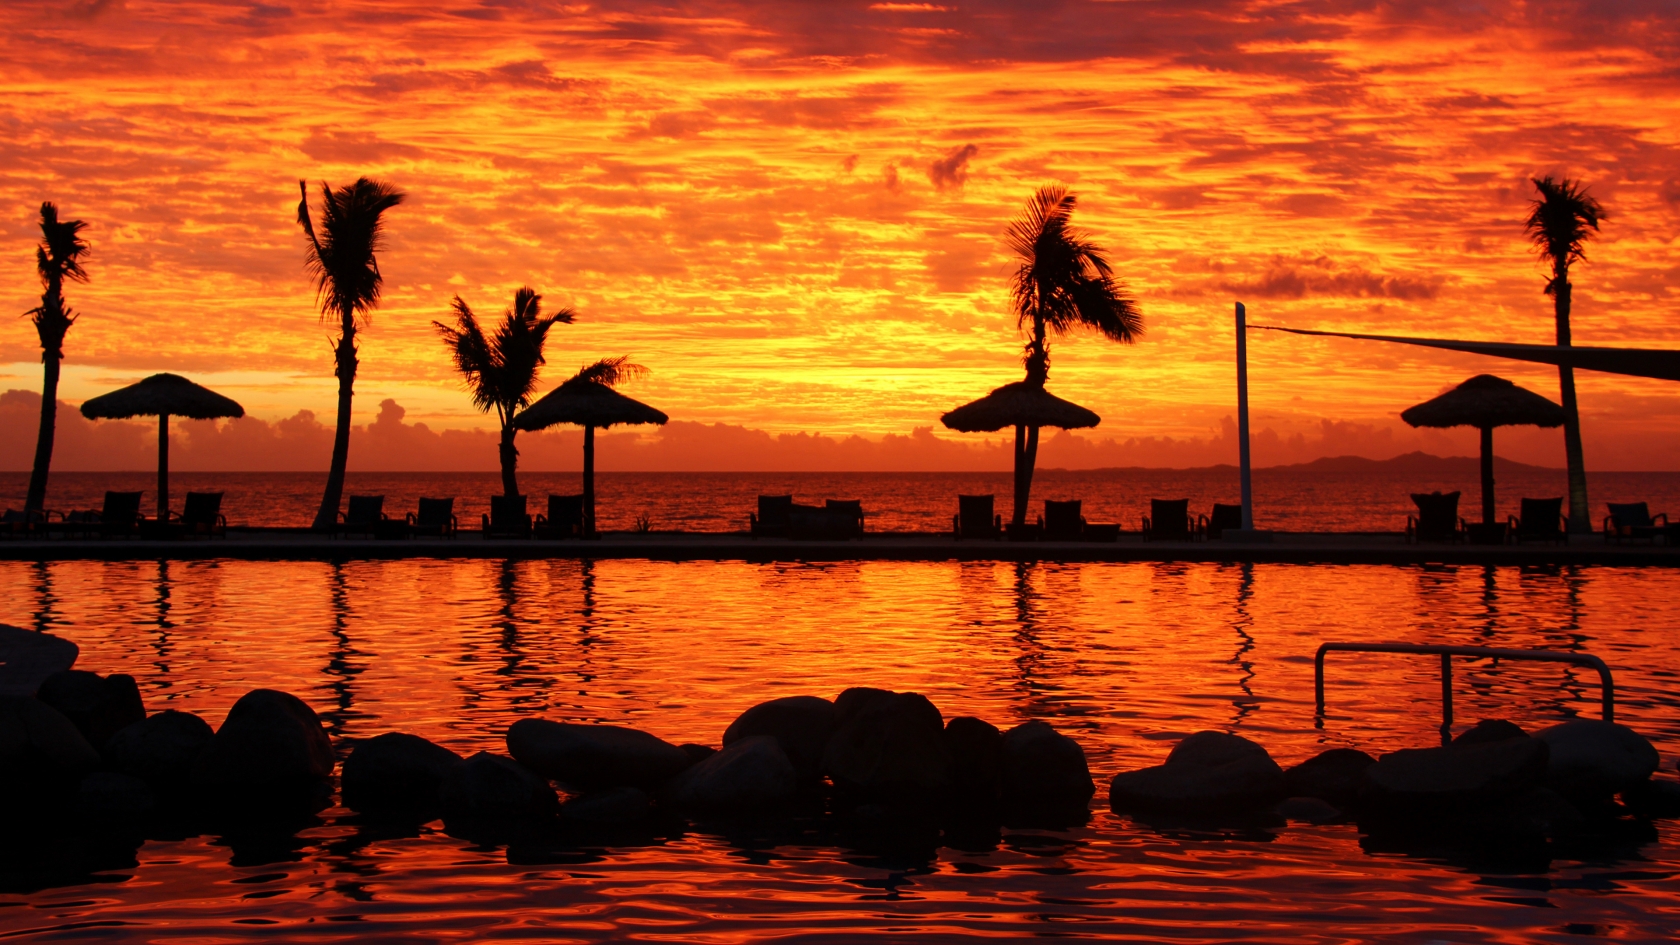 Fijian Sunset for 1680 x 945 HDTV resolution